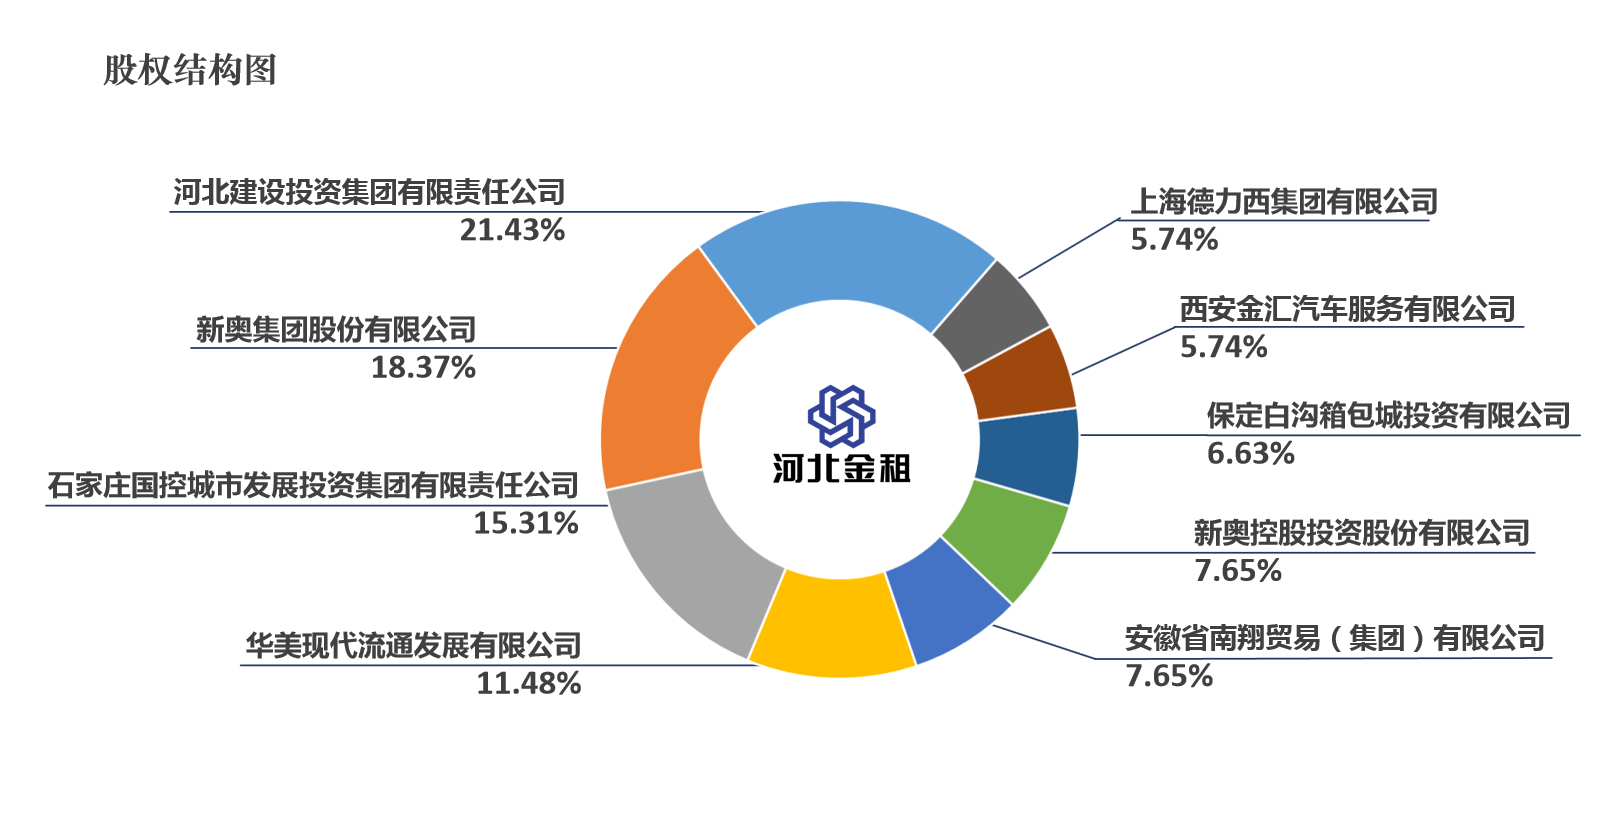 河北金租股权变更获批 河北资产管理公司入场持6.6327%股权